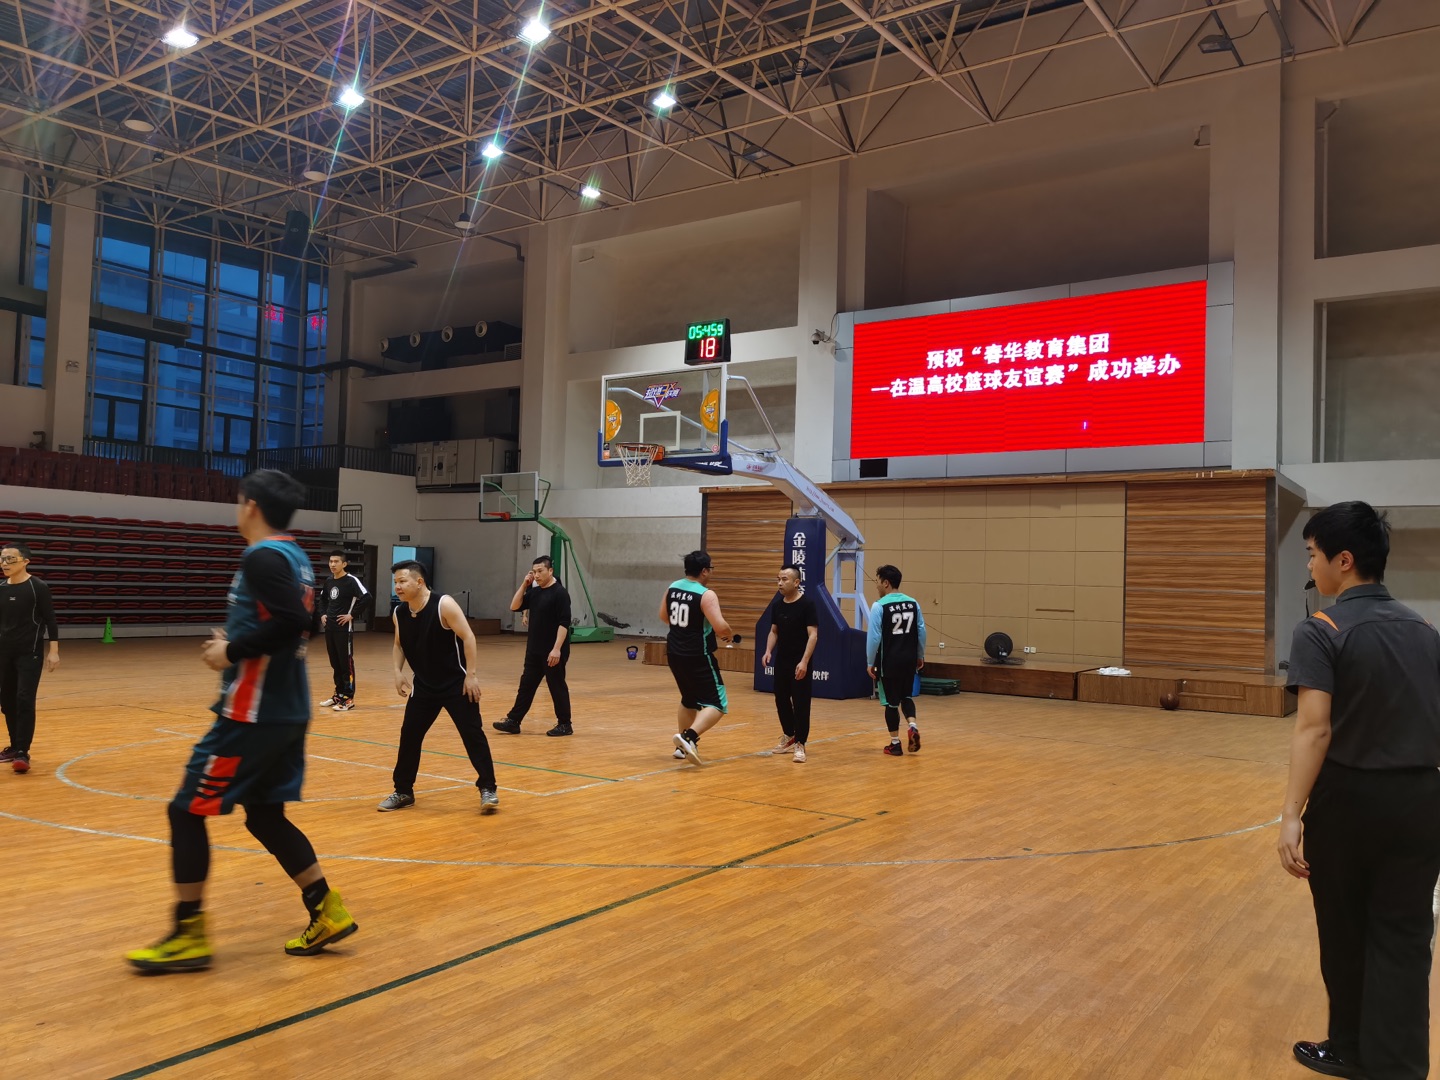 春华教育集团温州区域&温州科技职业学院教职工篮球友谊赛成功举办